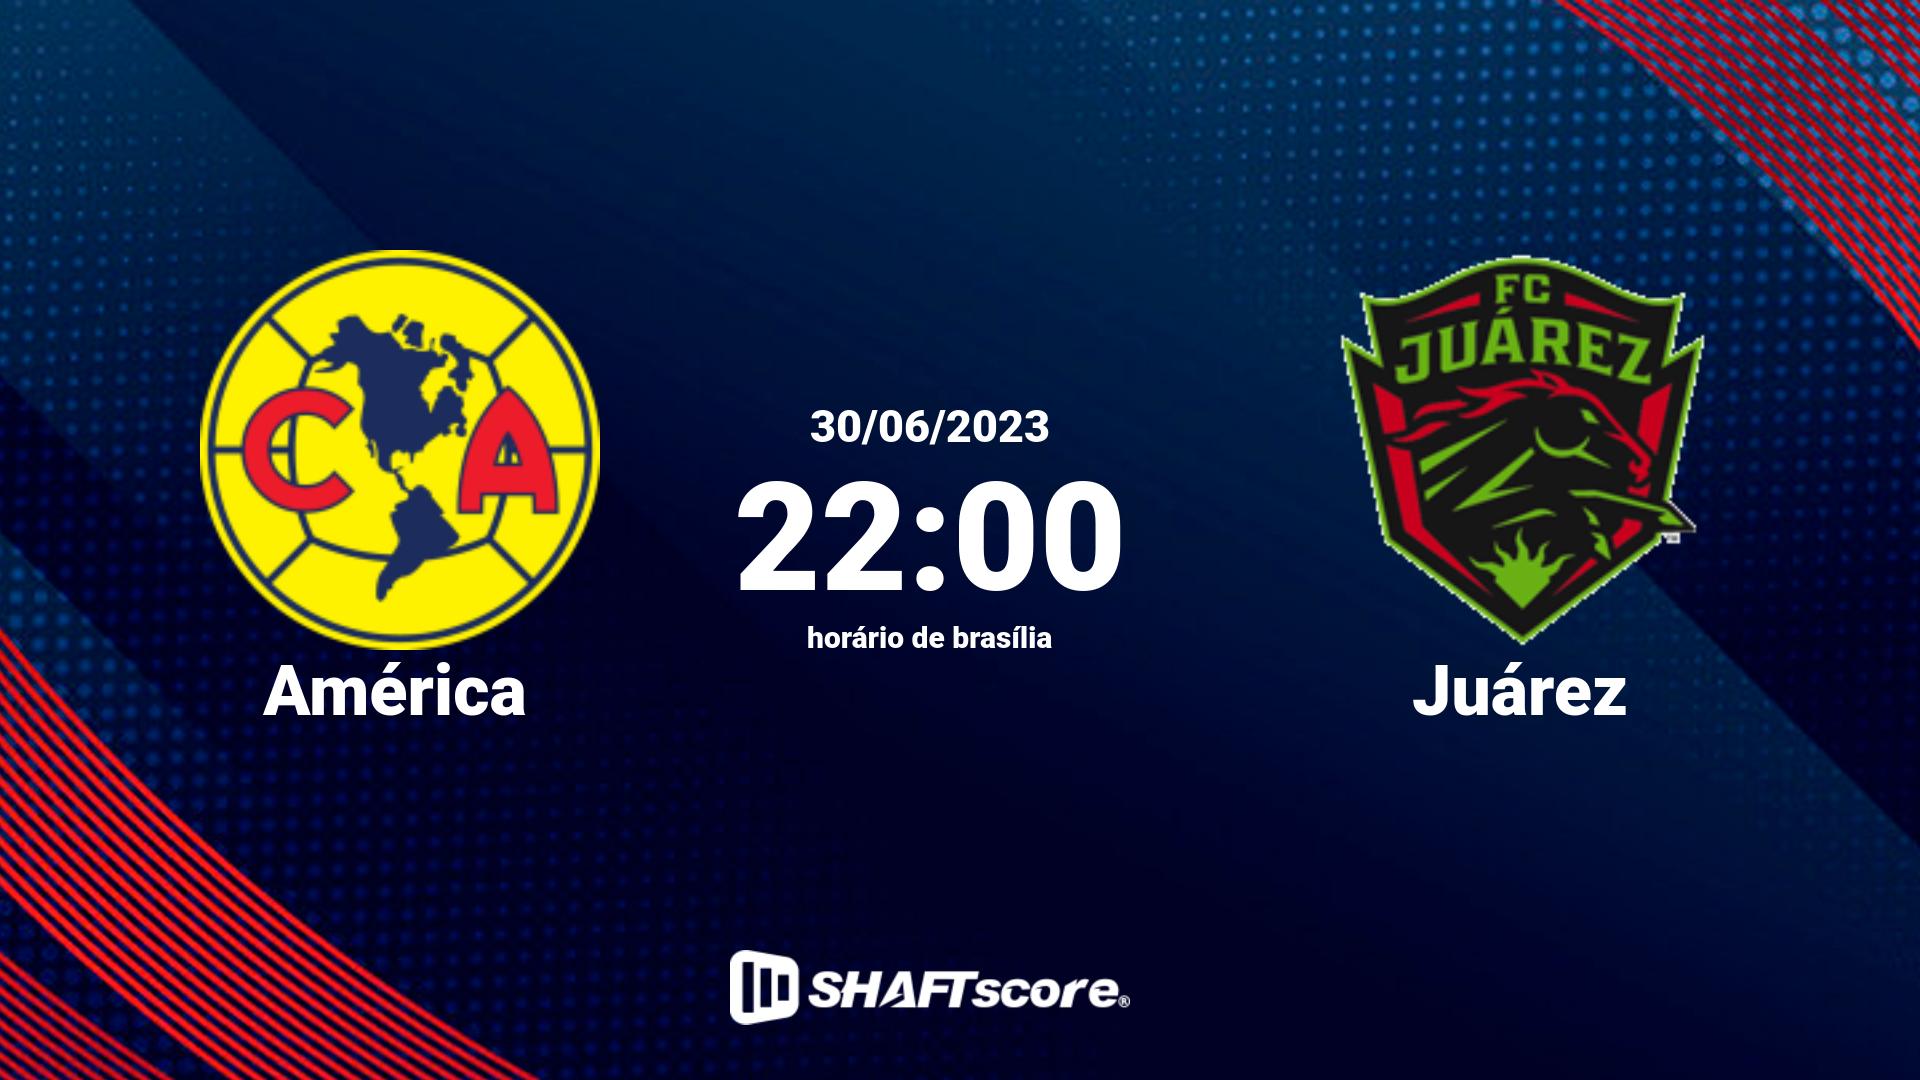 Estatísticas do jogo América vs Juárez 30.06 22:00